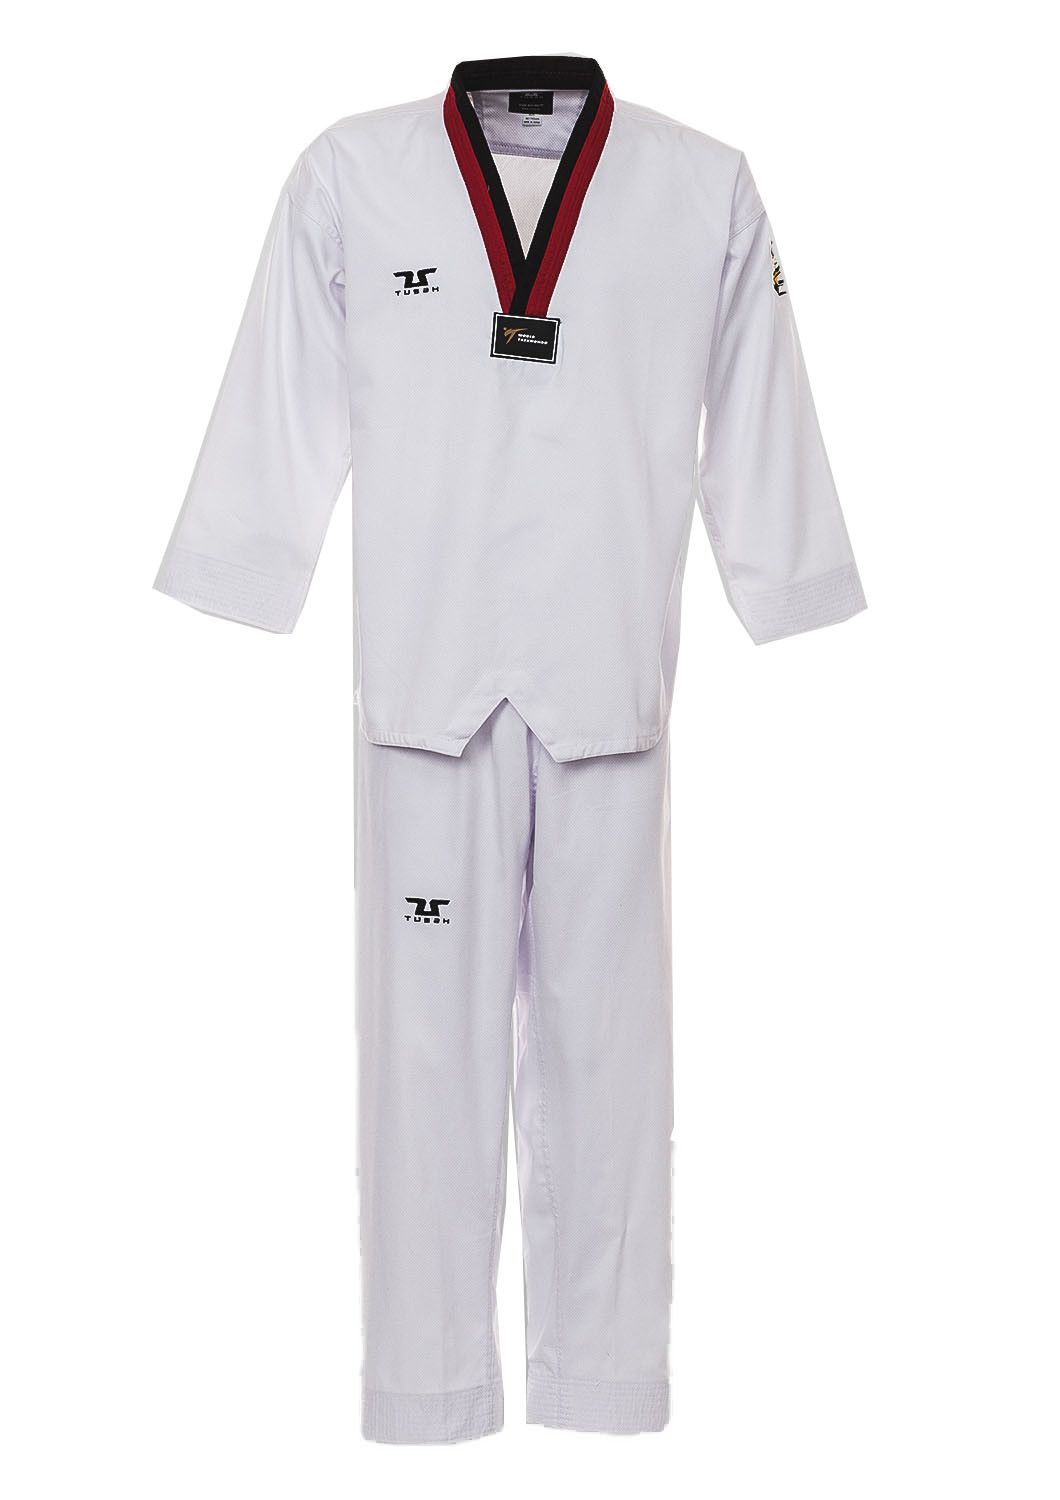 Dobok per Taekwondo Tusah Basic Poom collo Rosso e Nero Omologato WT WTF per competizioni ed allenamenti